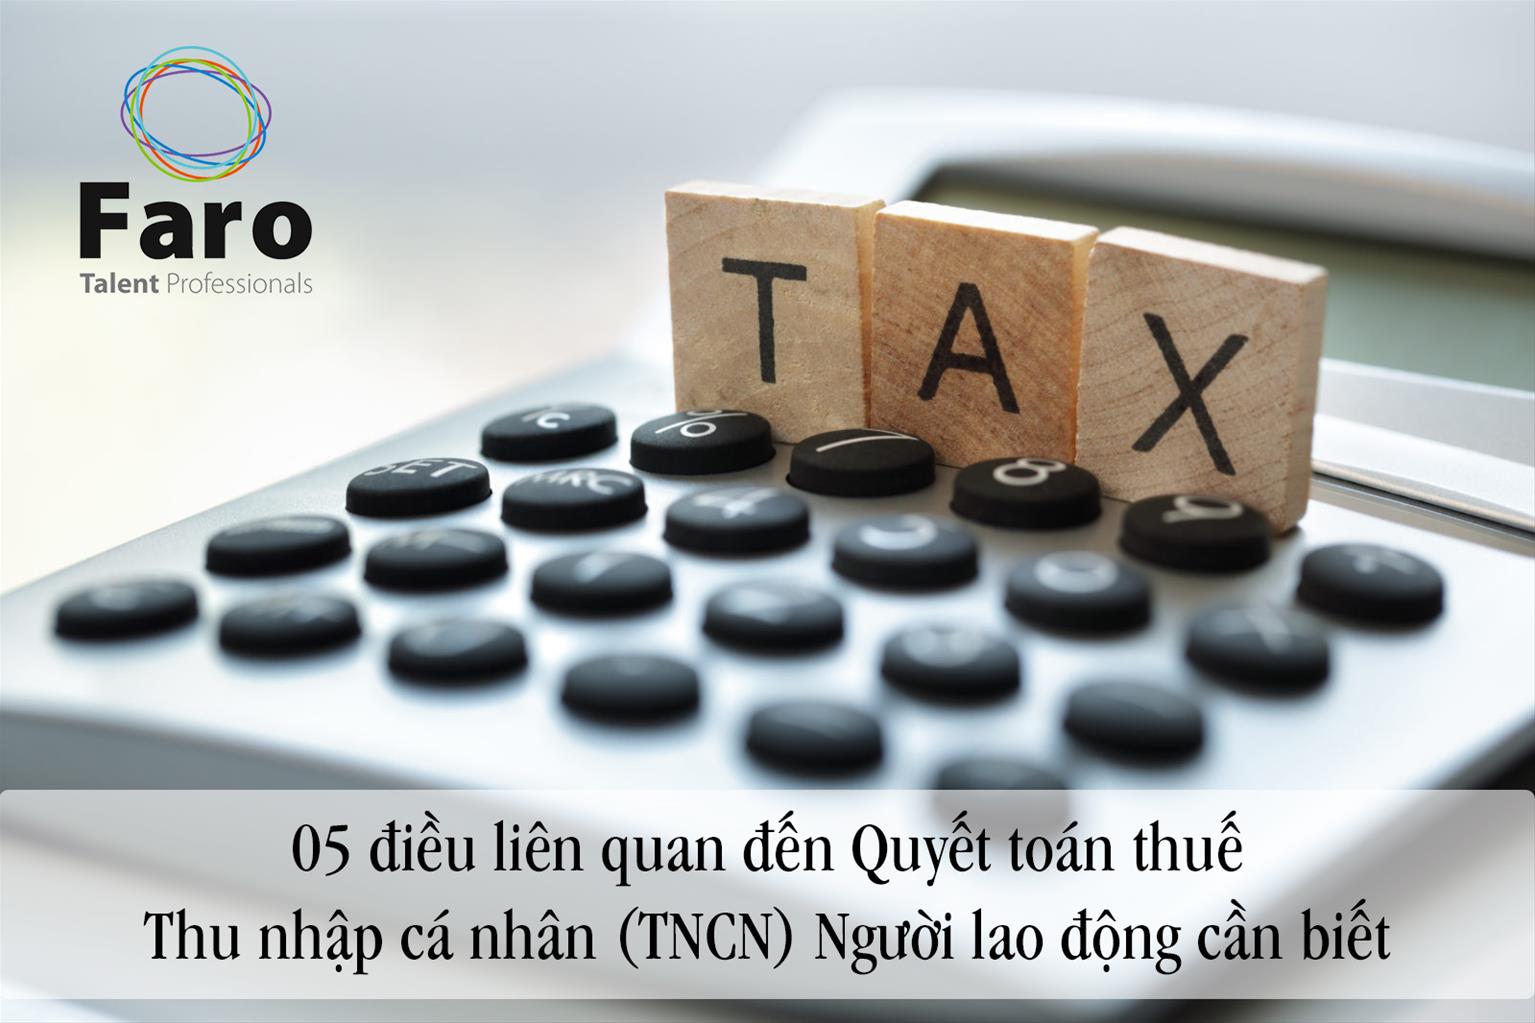 05 điều liên quan đến Quyết toán thuế Thu nhập cá nhân (TNCN) Người lao động cần biết